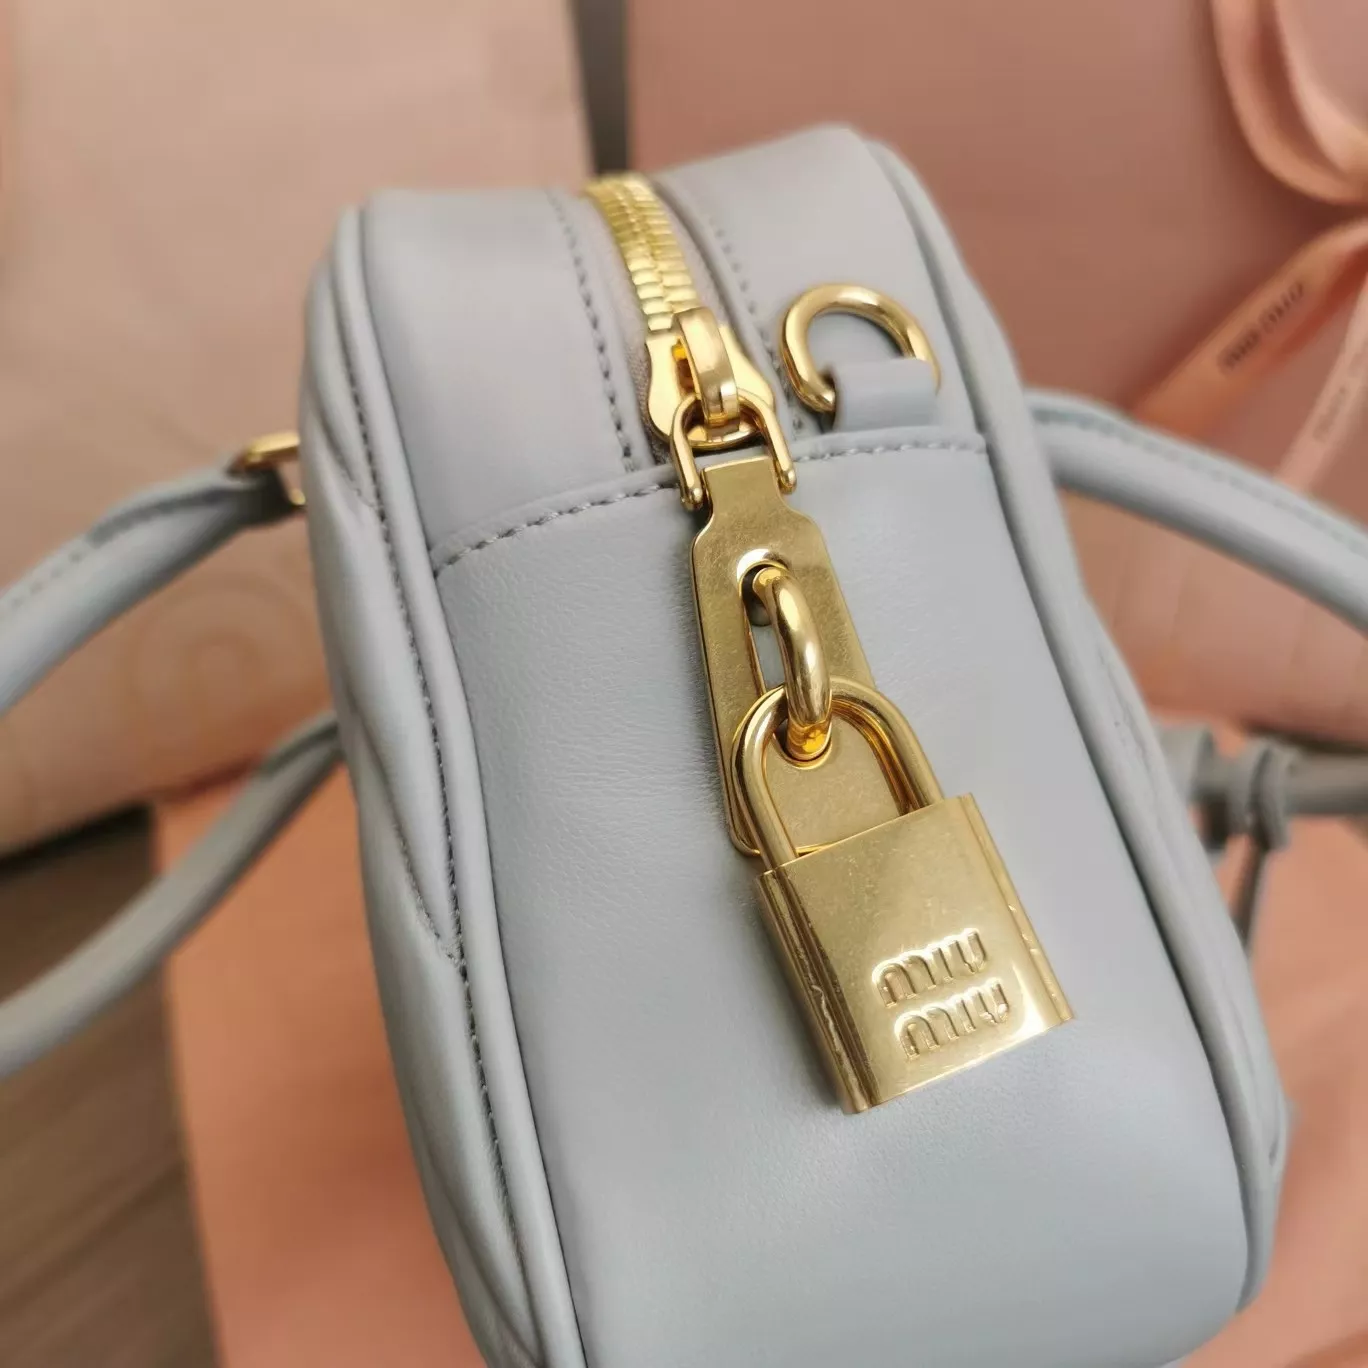 miumiuのバッグは本当にきれいで、この色はとてもきれいです。の画像 (8枚目)